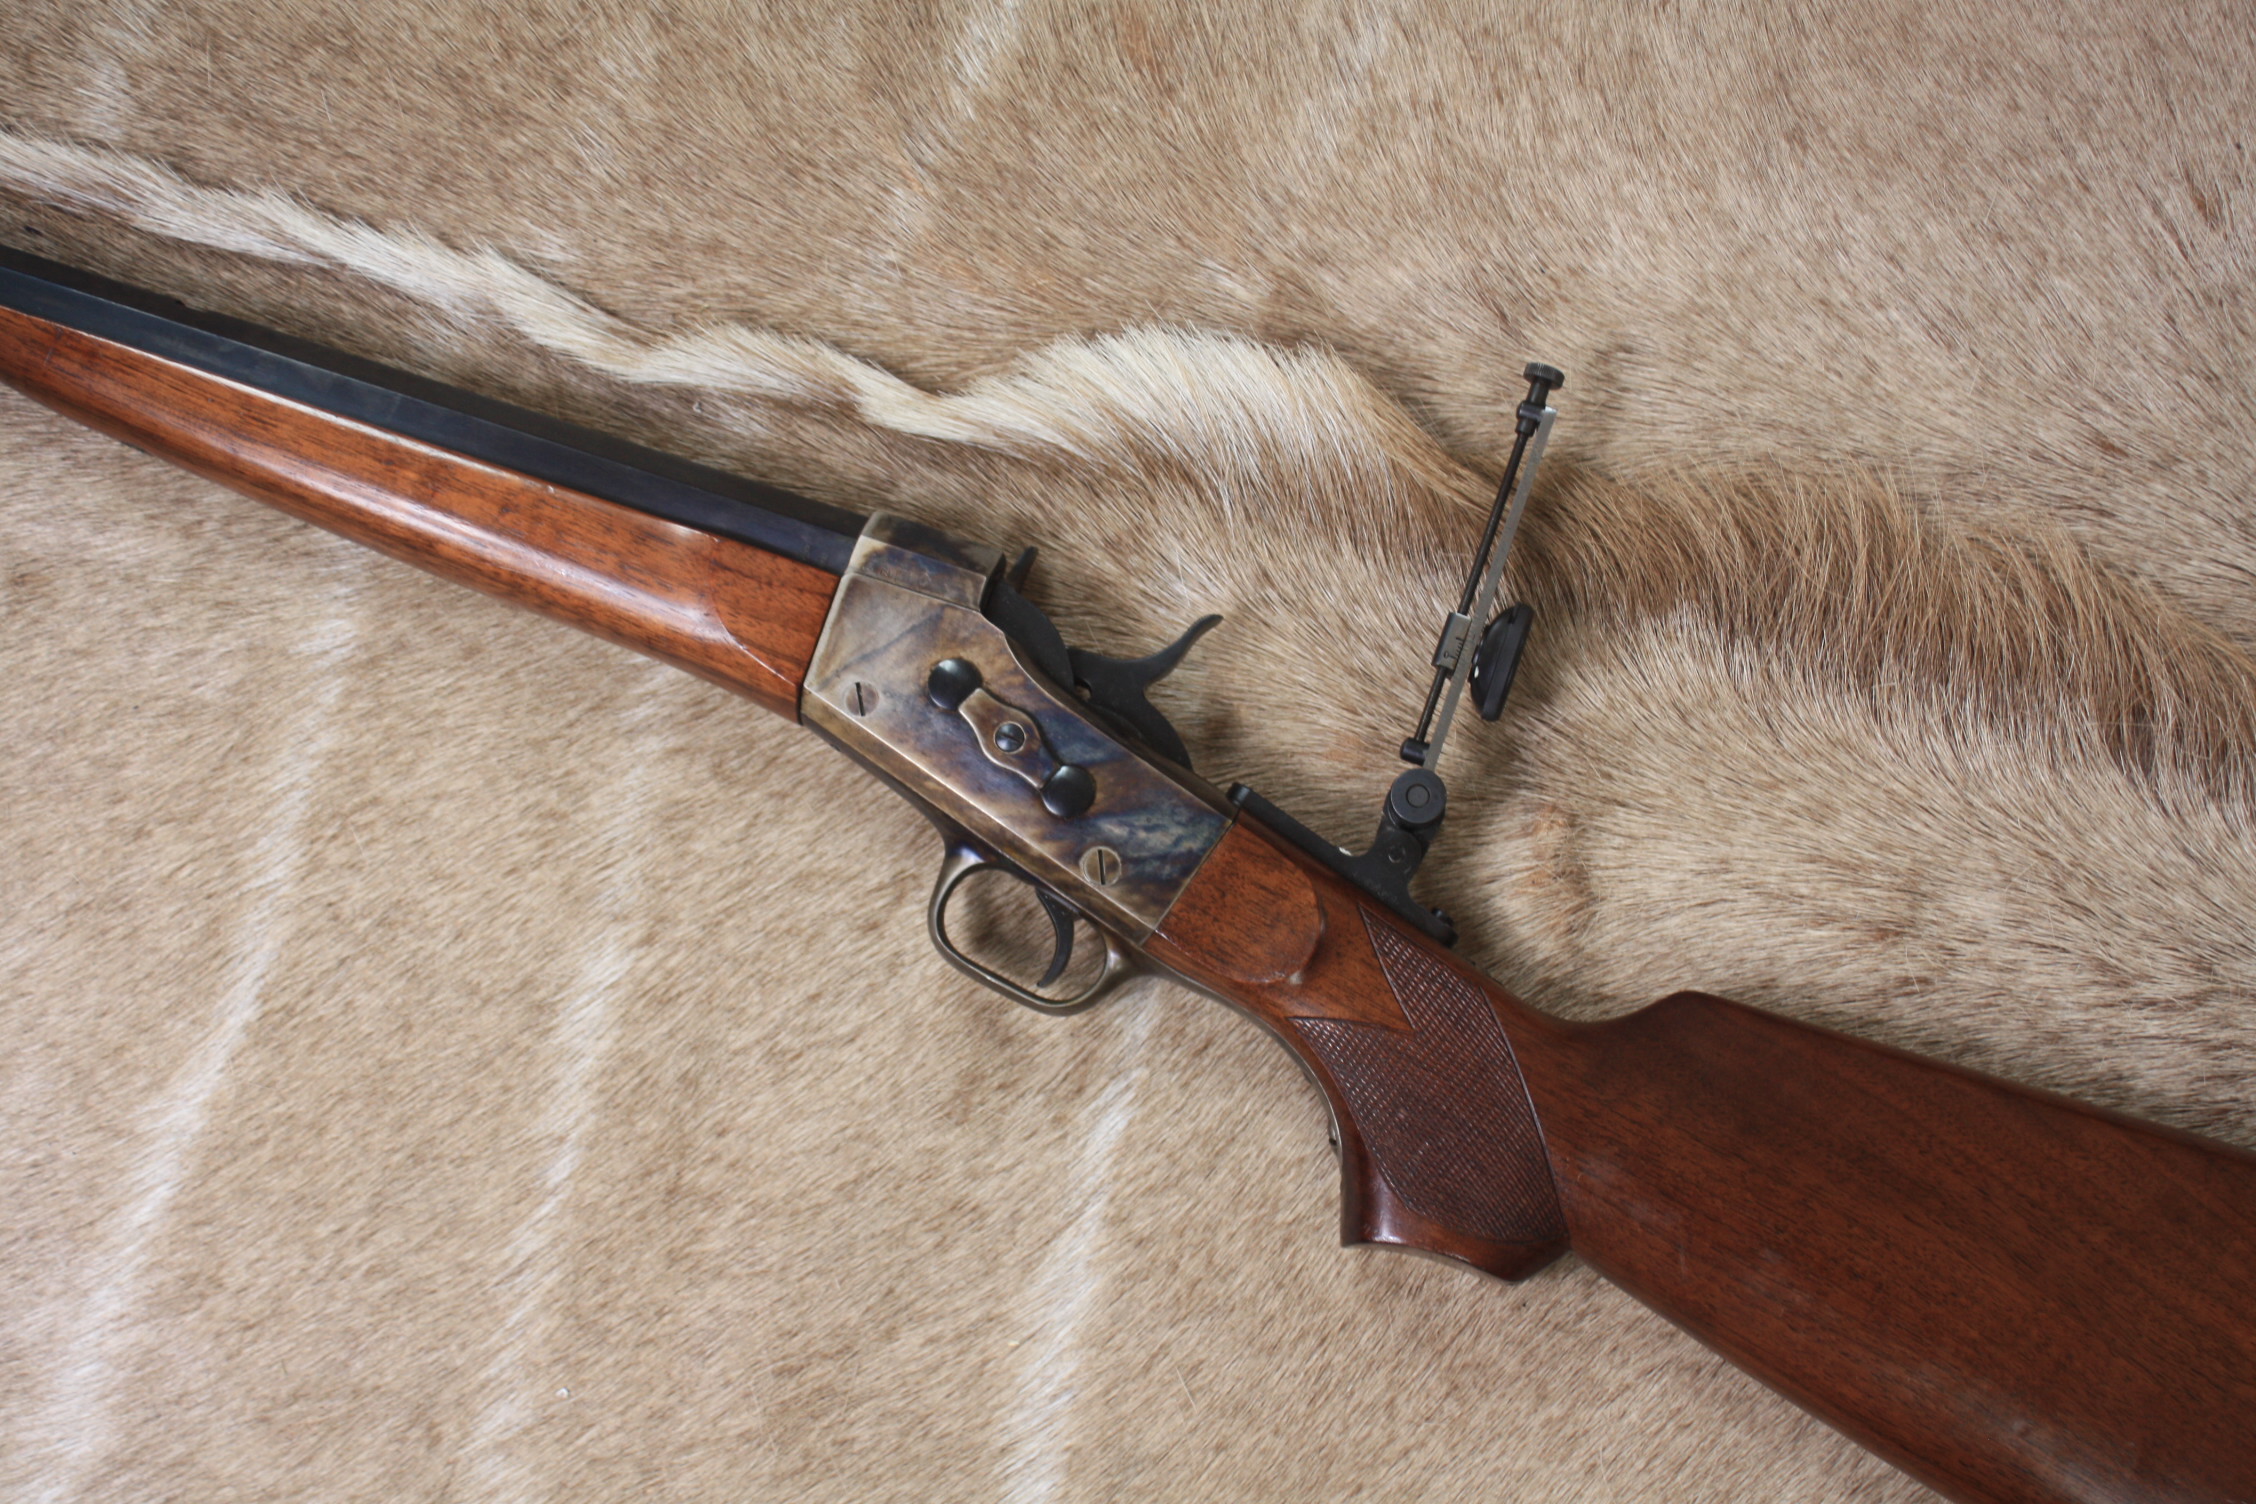 Pedersoli replica of the Remington Rolling Block 45-70 Rifle